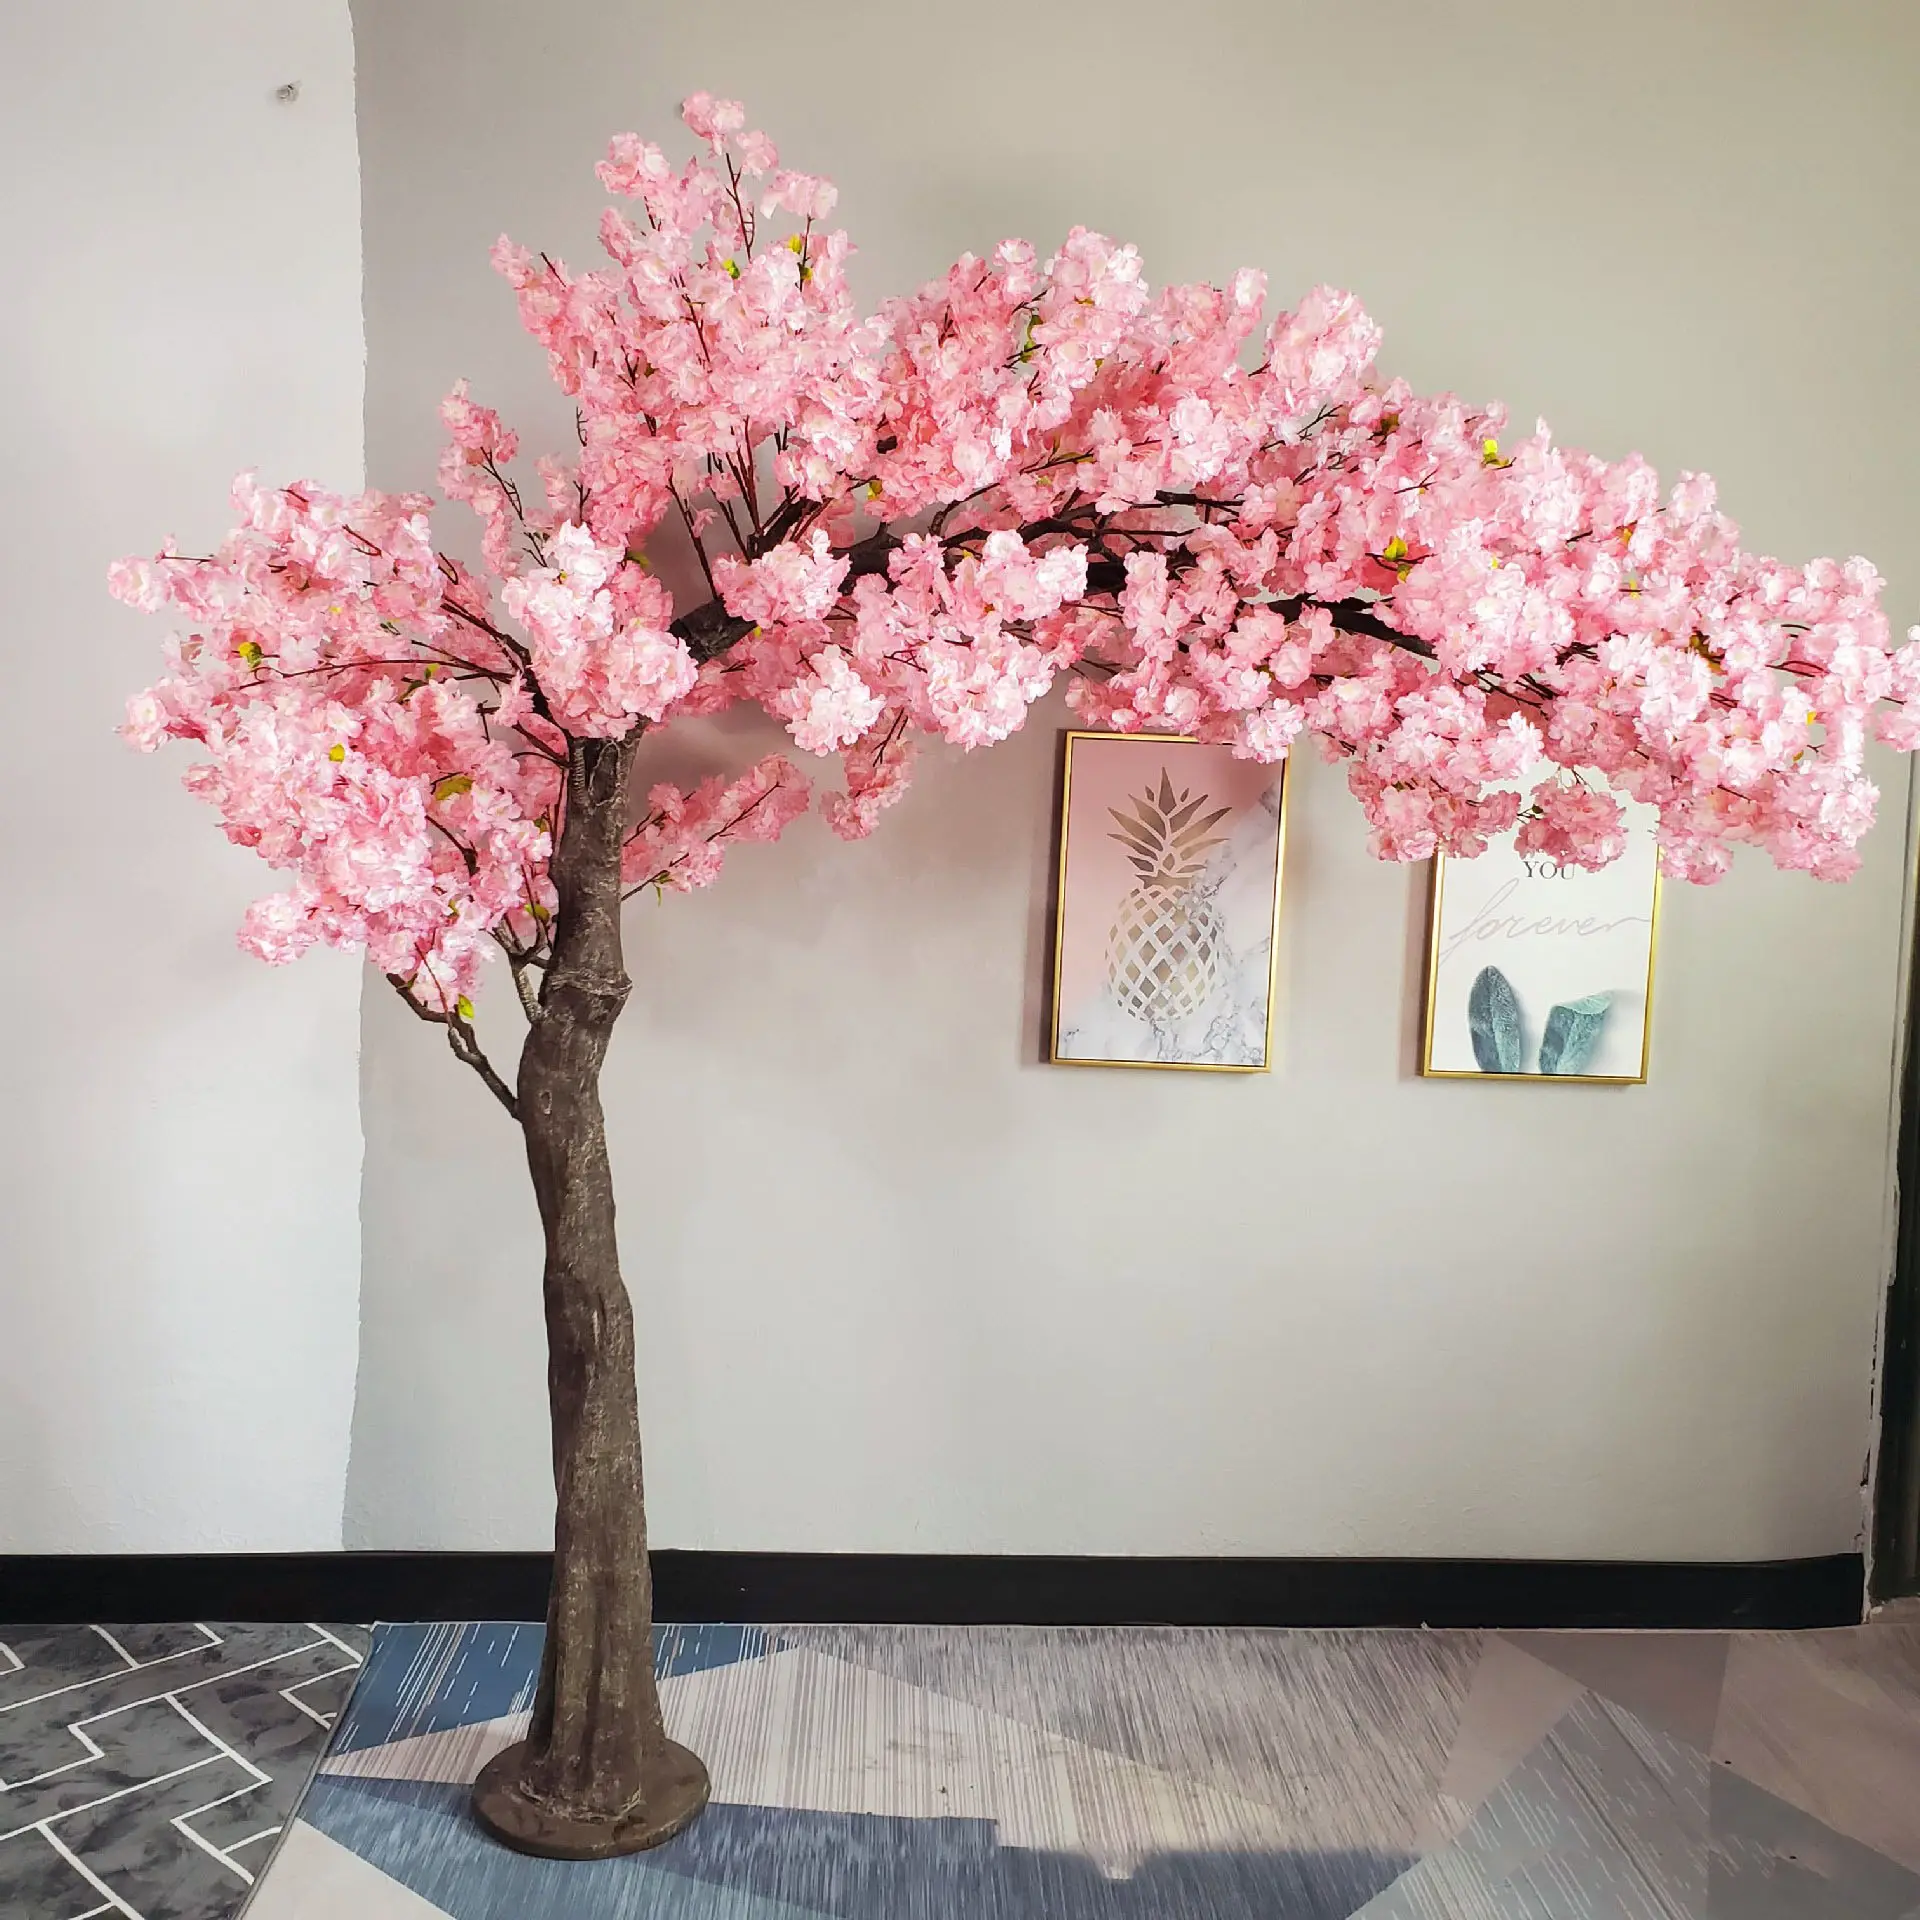 In stile decorazione per la casa rosa fiori di ciliegio flores artificiales fiore vaso bonsai pianta ciliegio